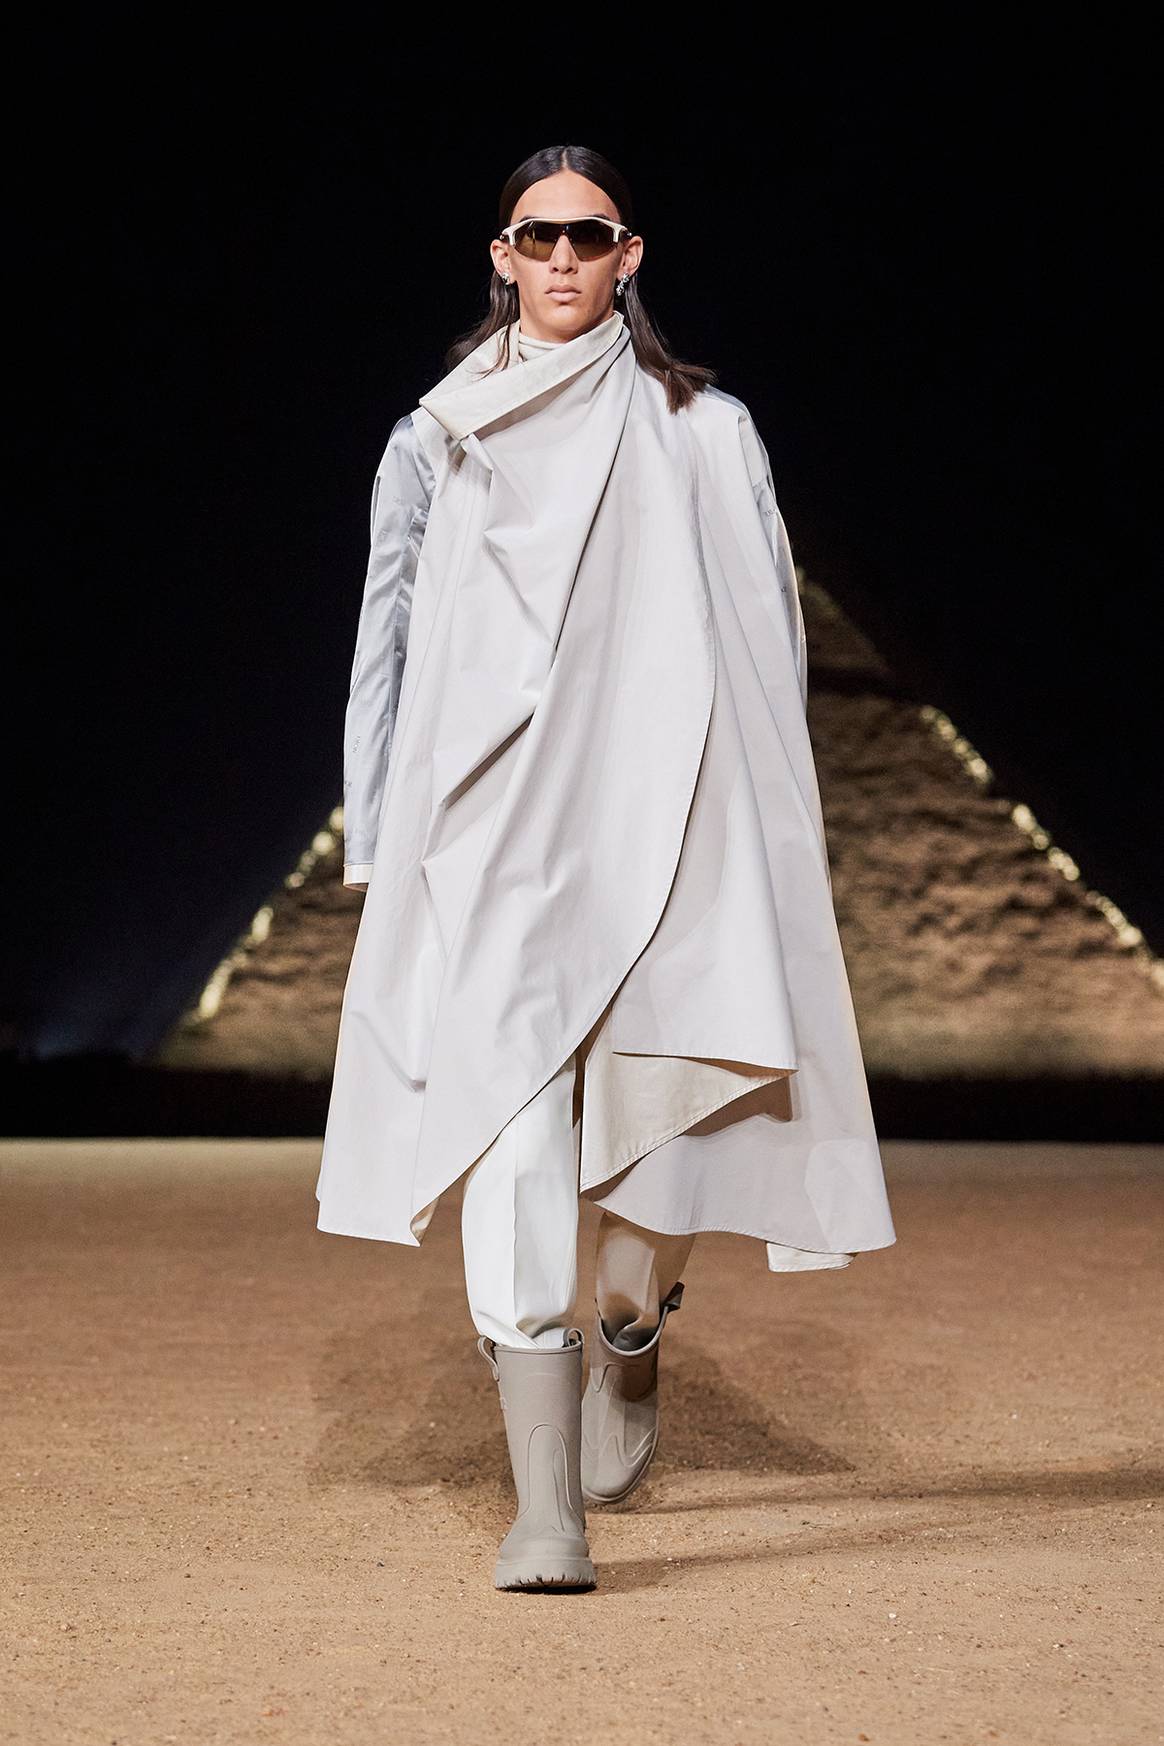 Photo Credits: Desfile de presentación en Egipto de la colección de hombre de Dior para la temporada de Otoño de 2023. Fotografía de cortesía.